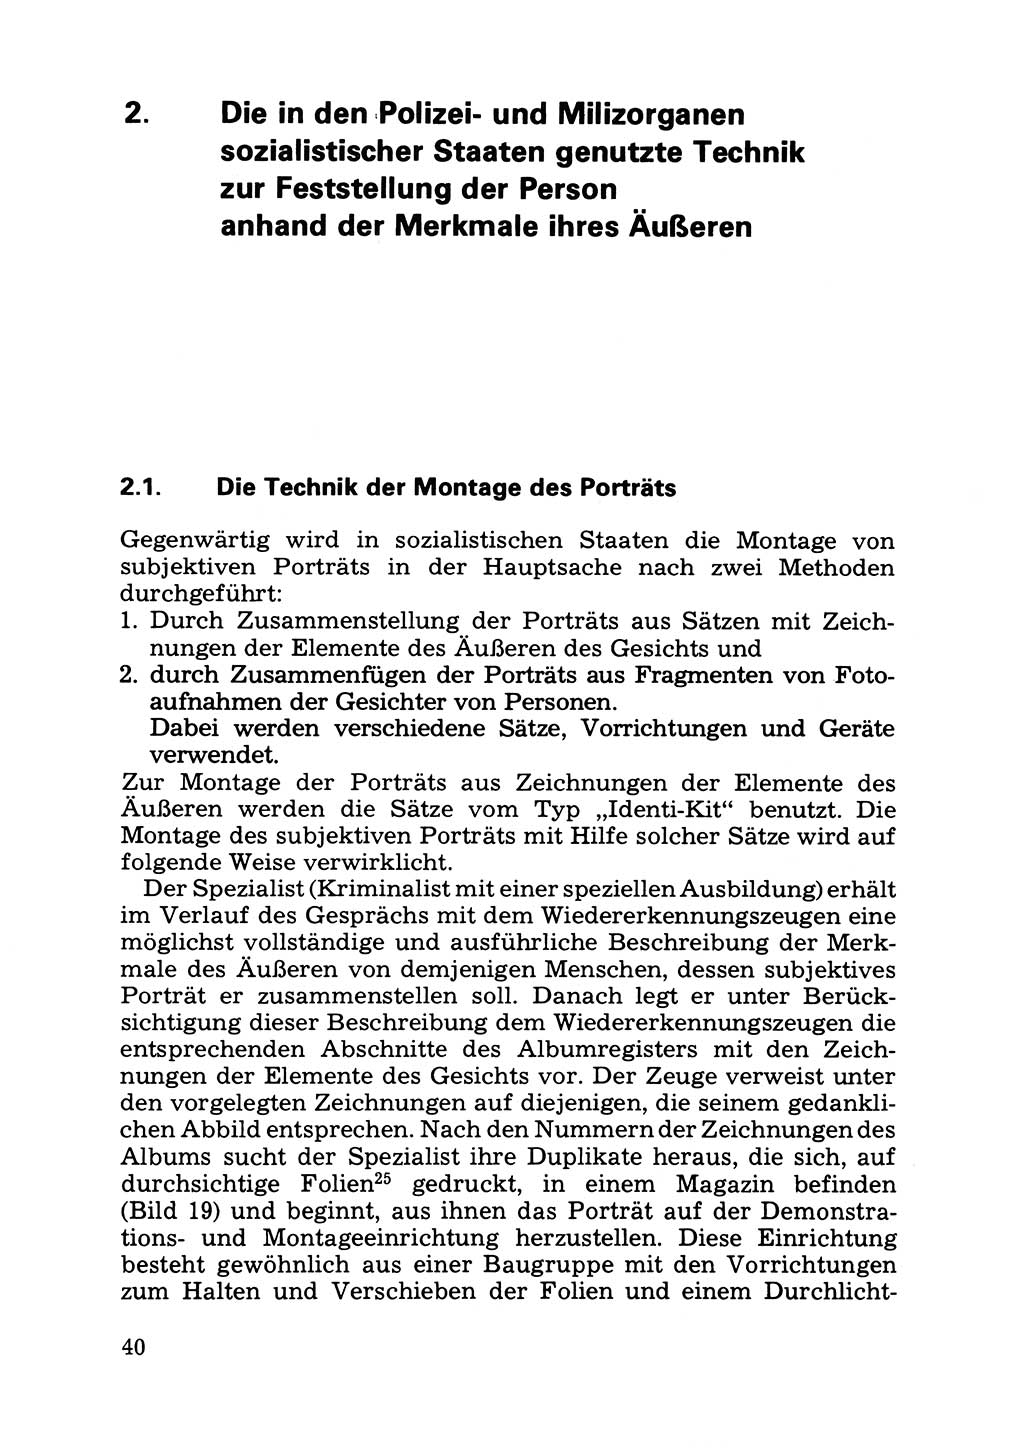 Das subjektive Porträt [Deutsche Demokratische Republik (DDR)] 1981, Seite 40 (Subj. Port. DDR 1981, S. 40)